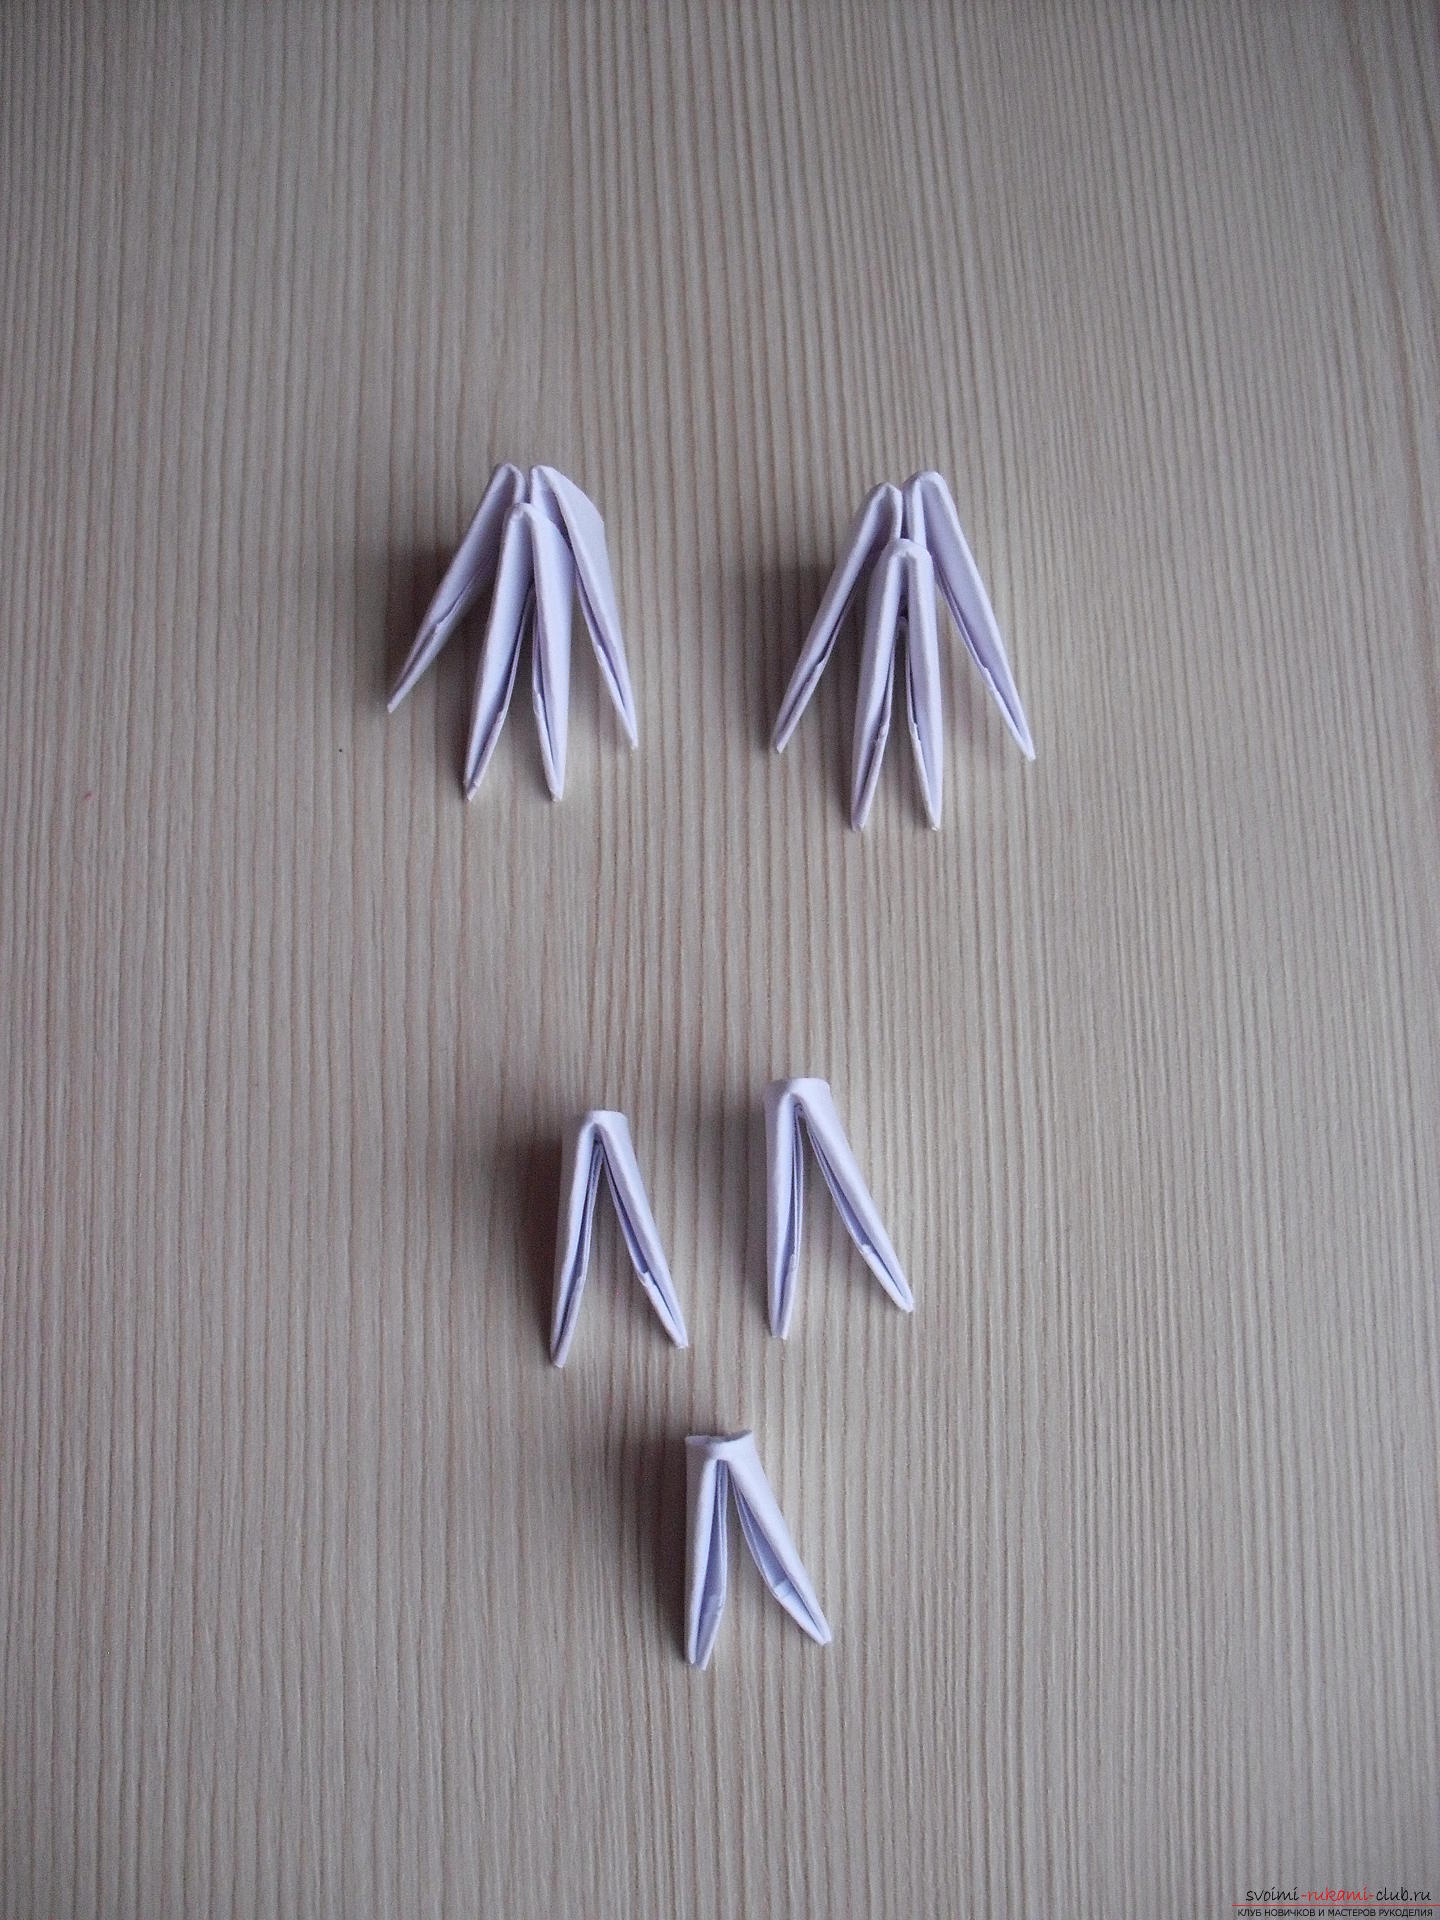 Этот мастер-класс научит как сделать модульное оригами - гриб мухомор.. Фото №12